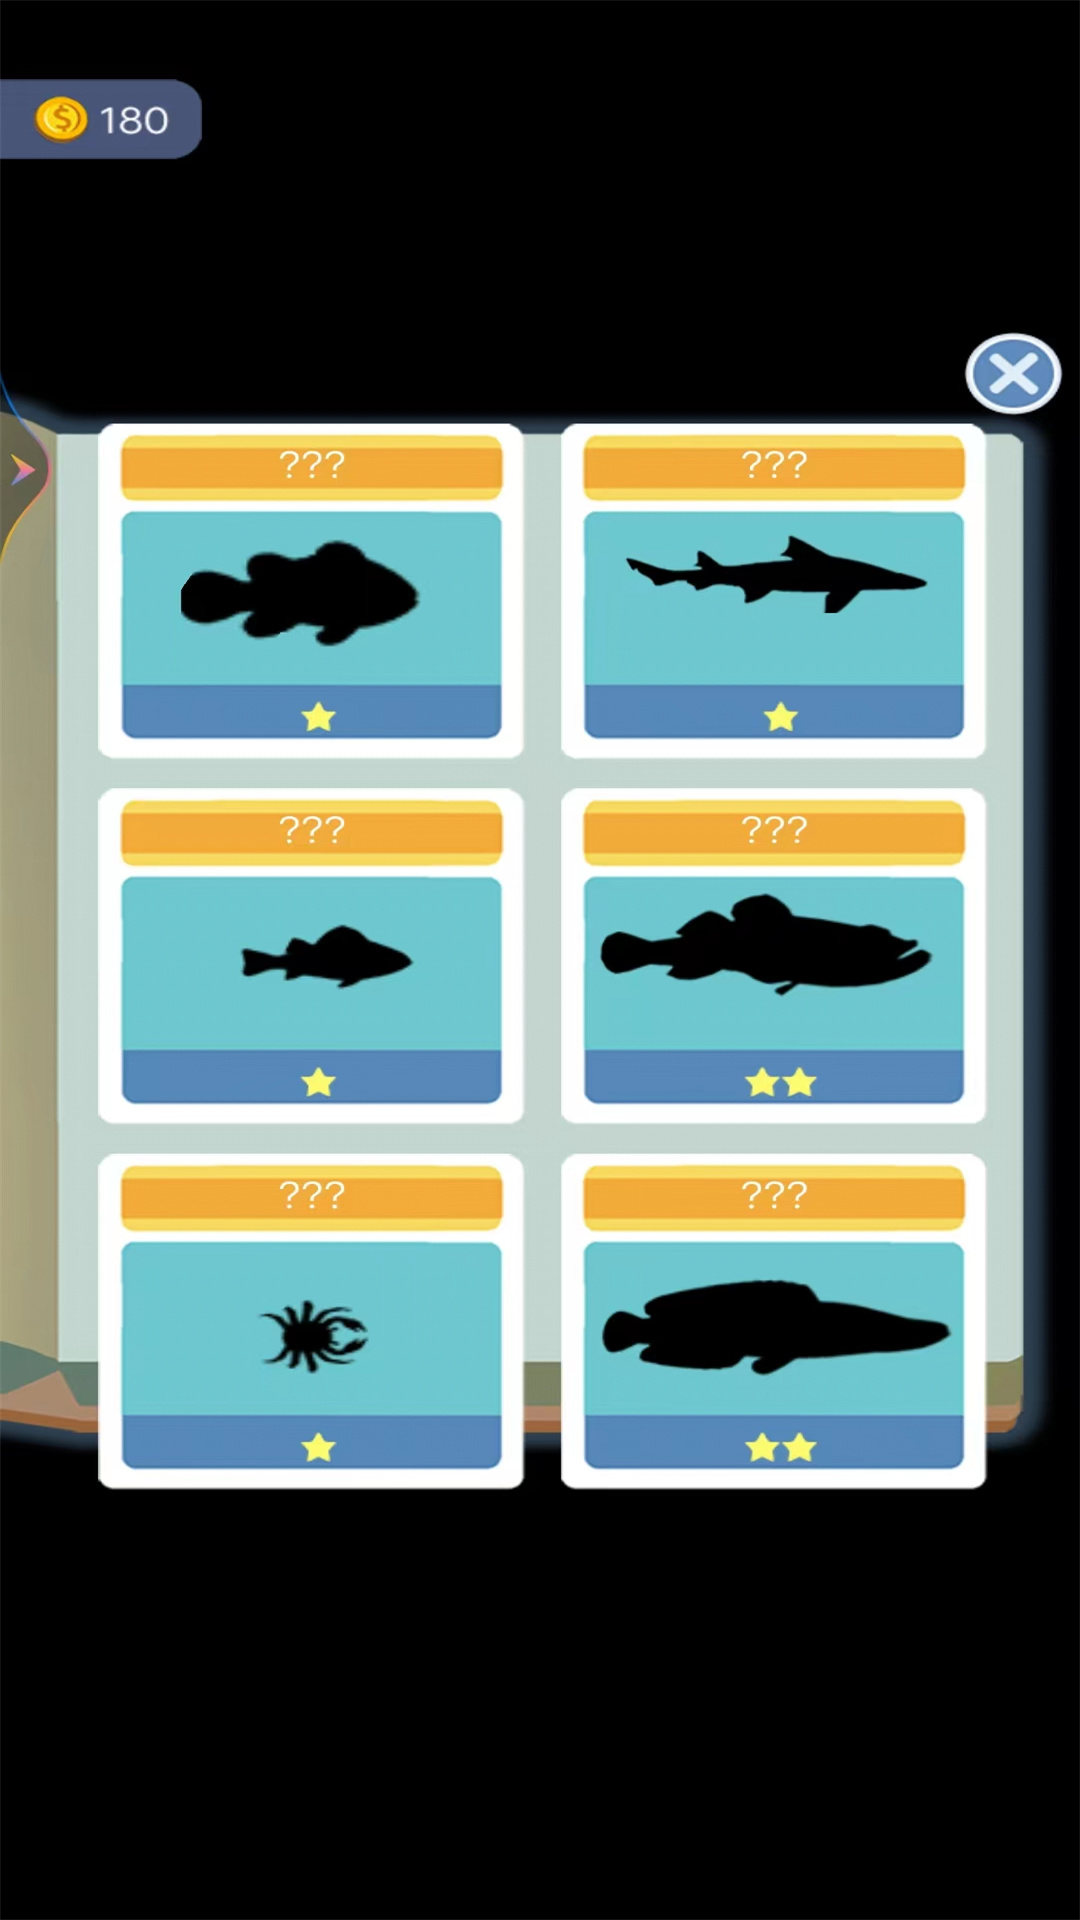 天天来钓鱼 v1-经典钓鱼模拟类游戏截图2